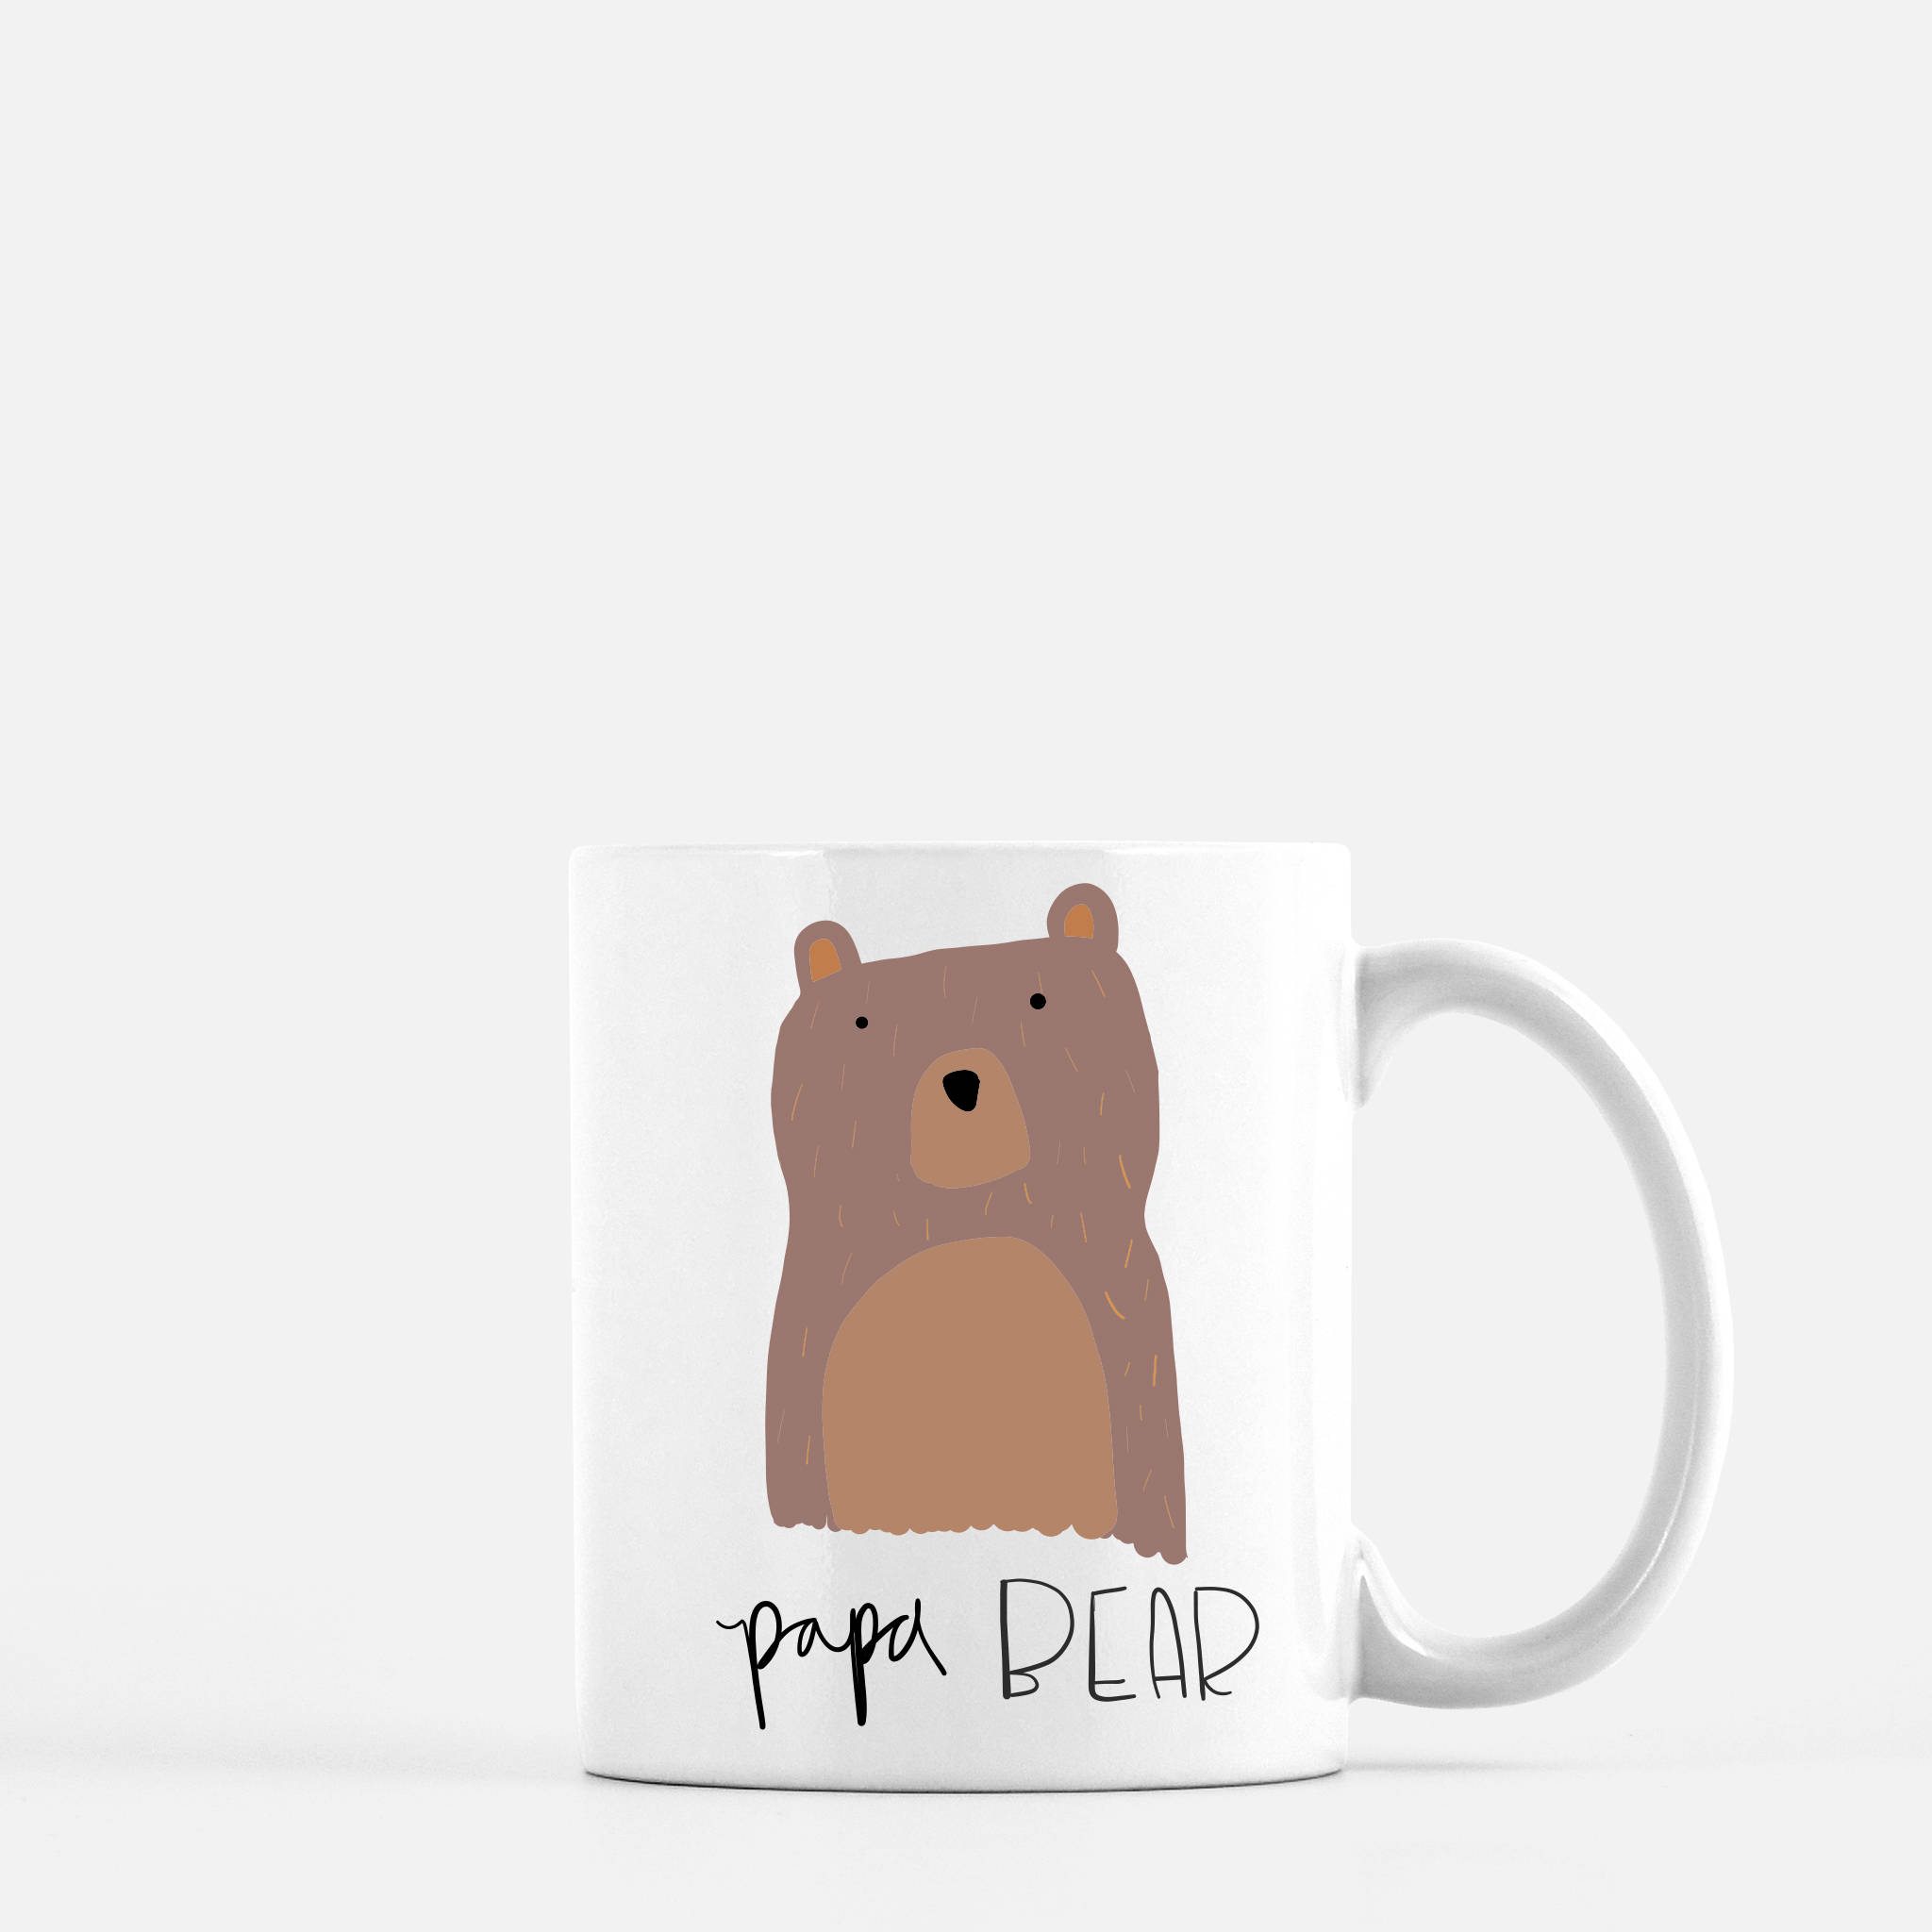 mama papa bear mugs